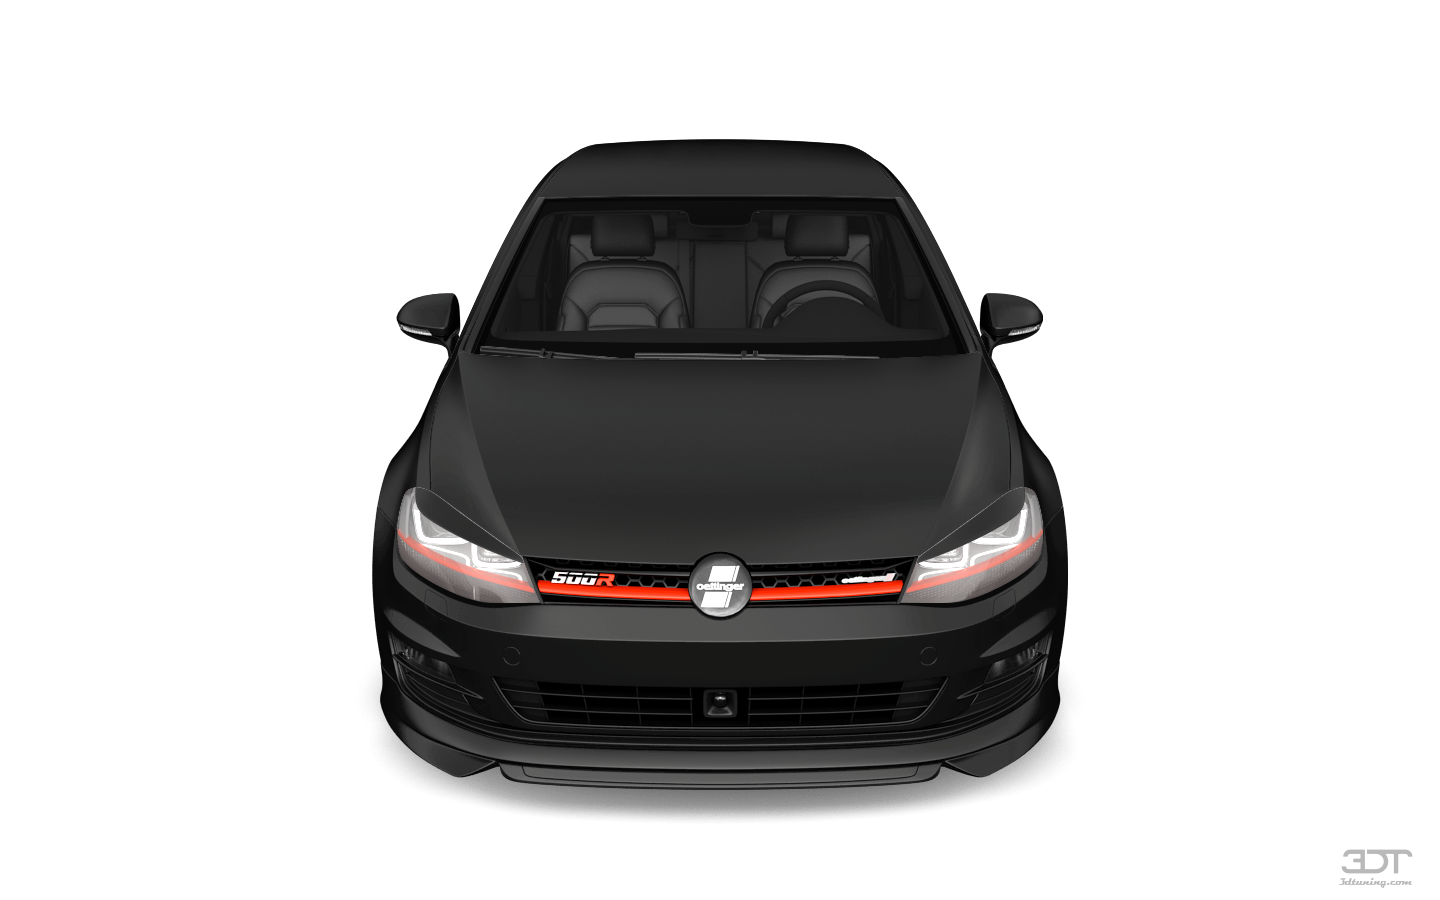 Volkswagen Golf 7 5 Door Hatchback 2013